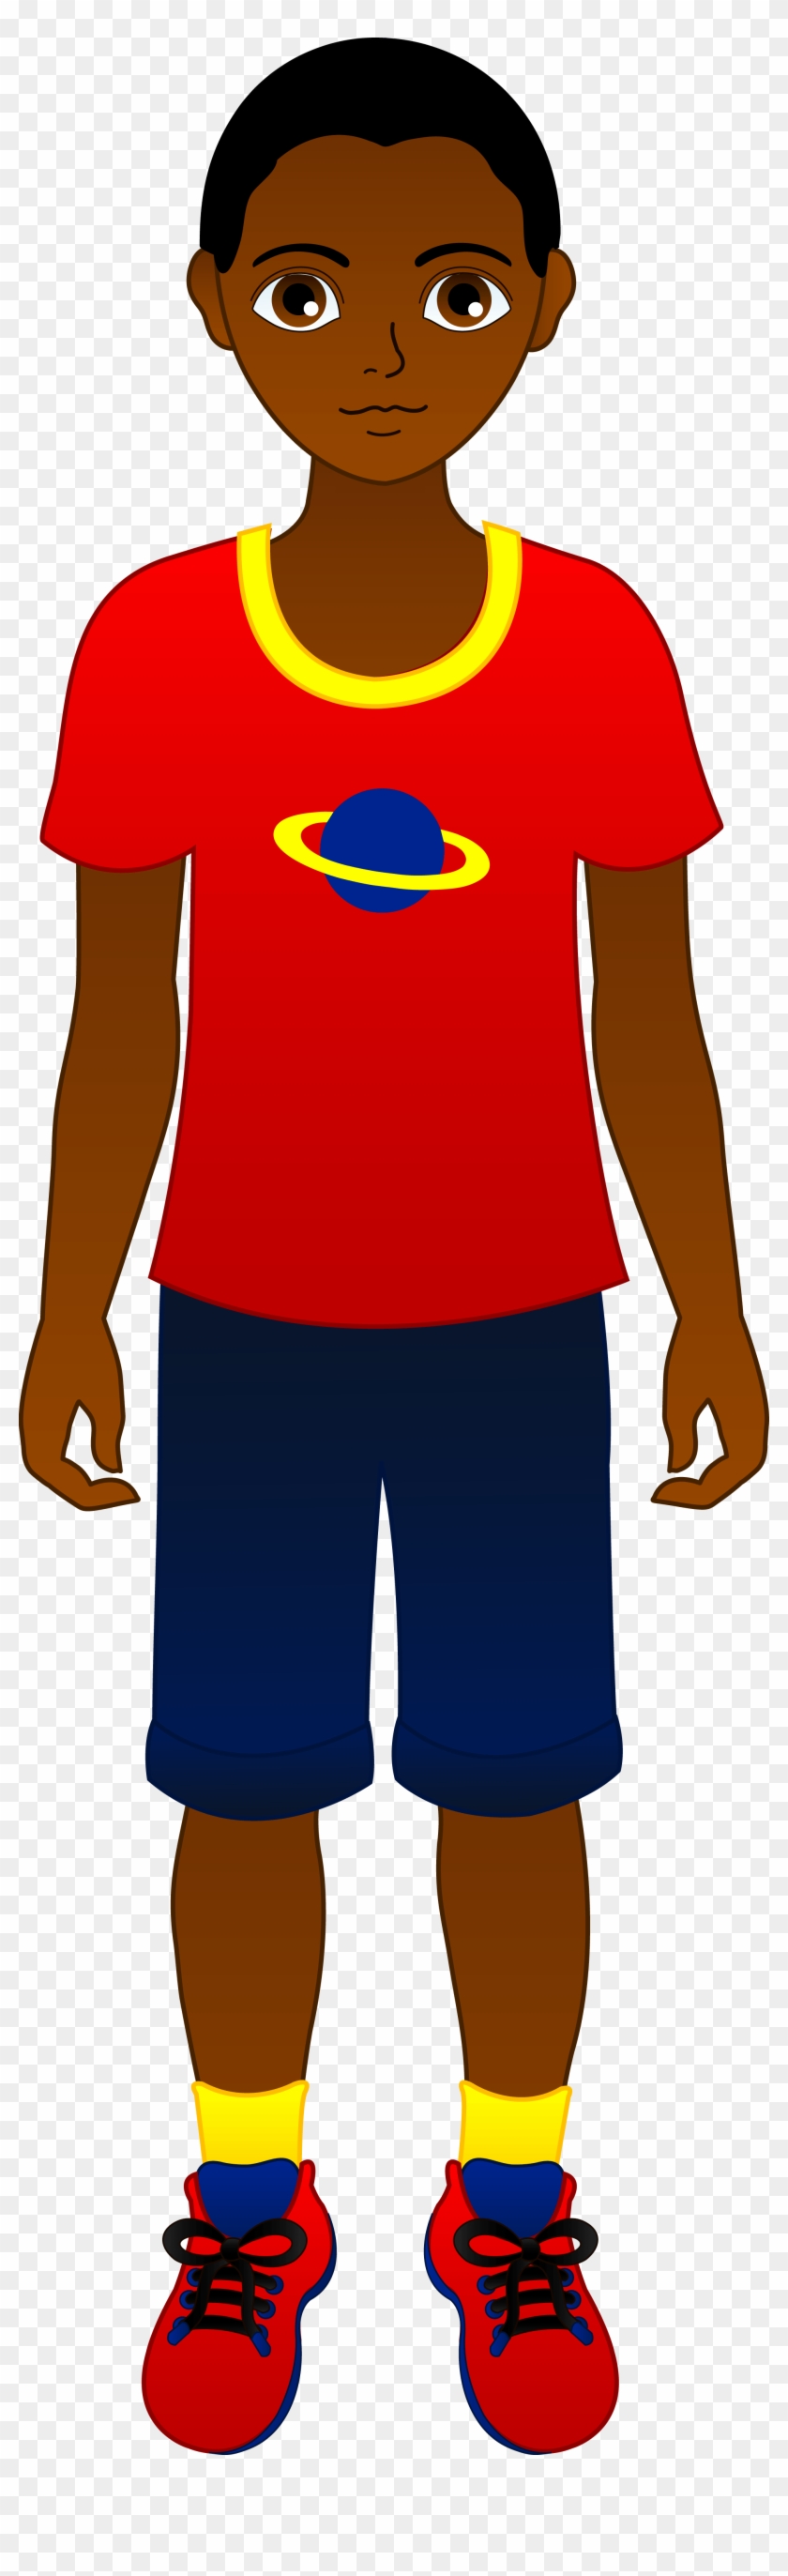 Teen Diaper Boy Clipart - Cartoon African American Boy #1193365